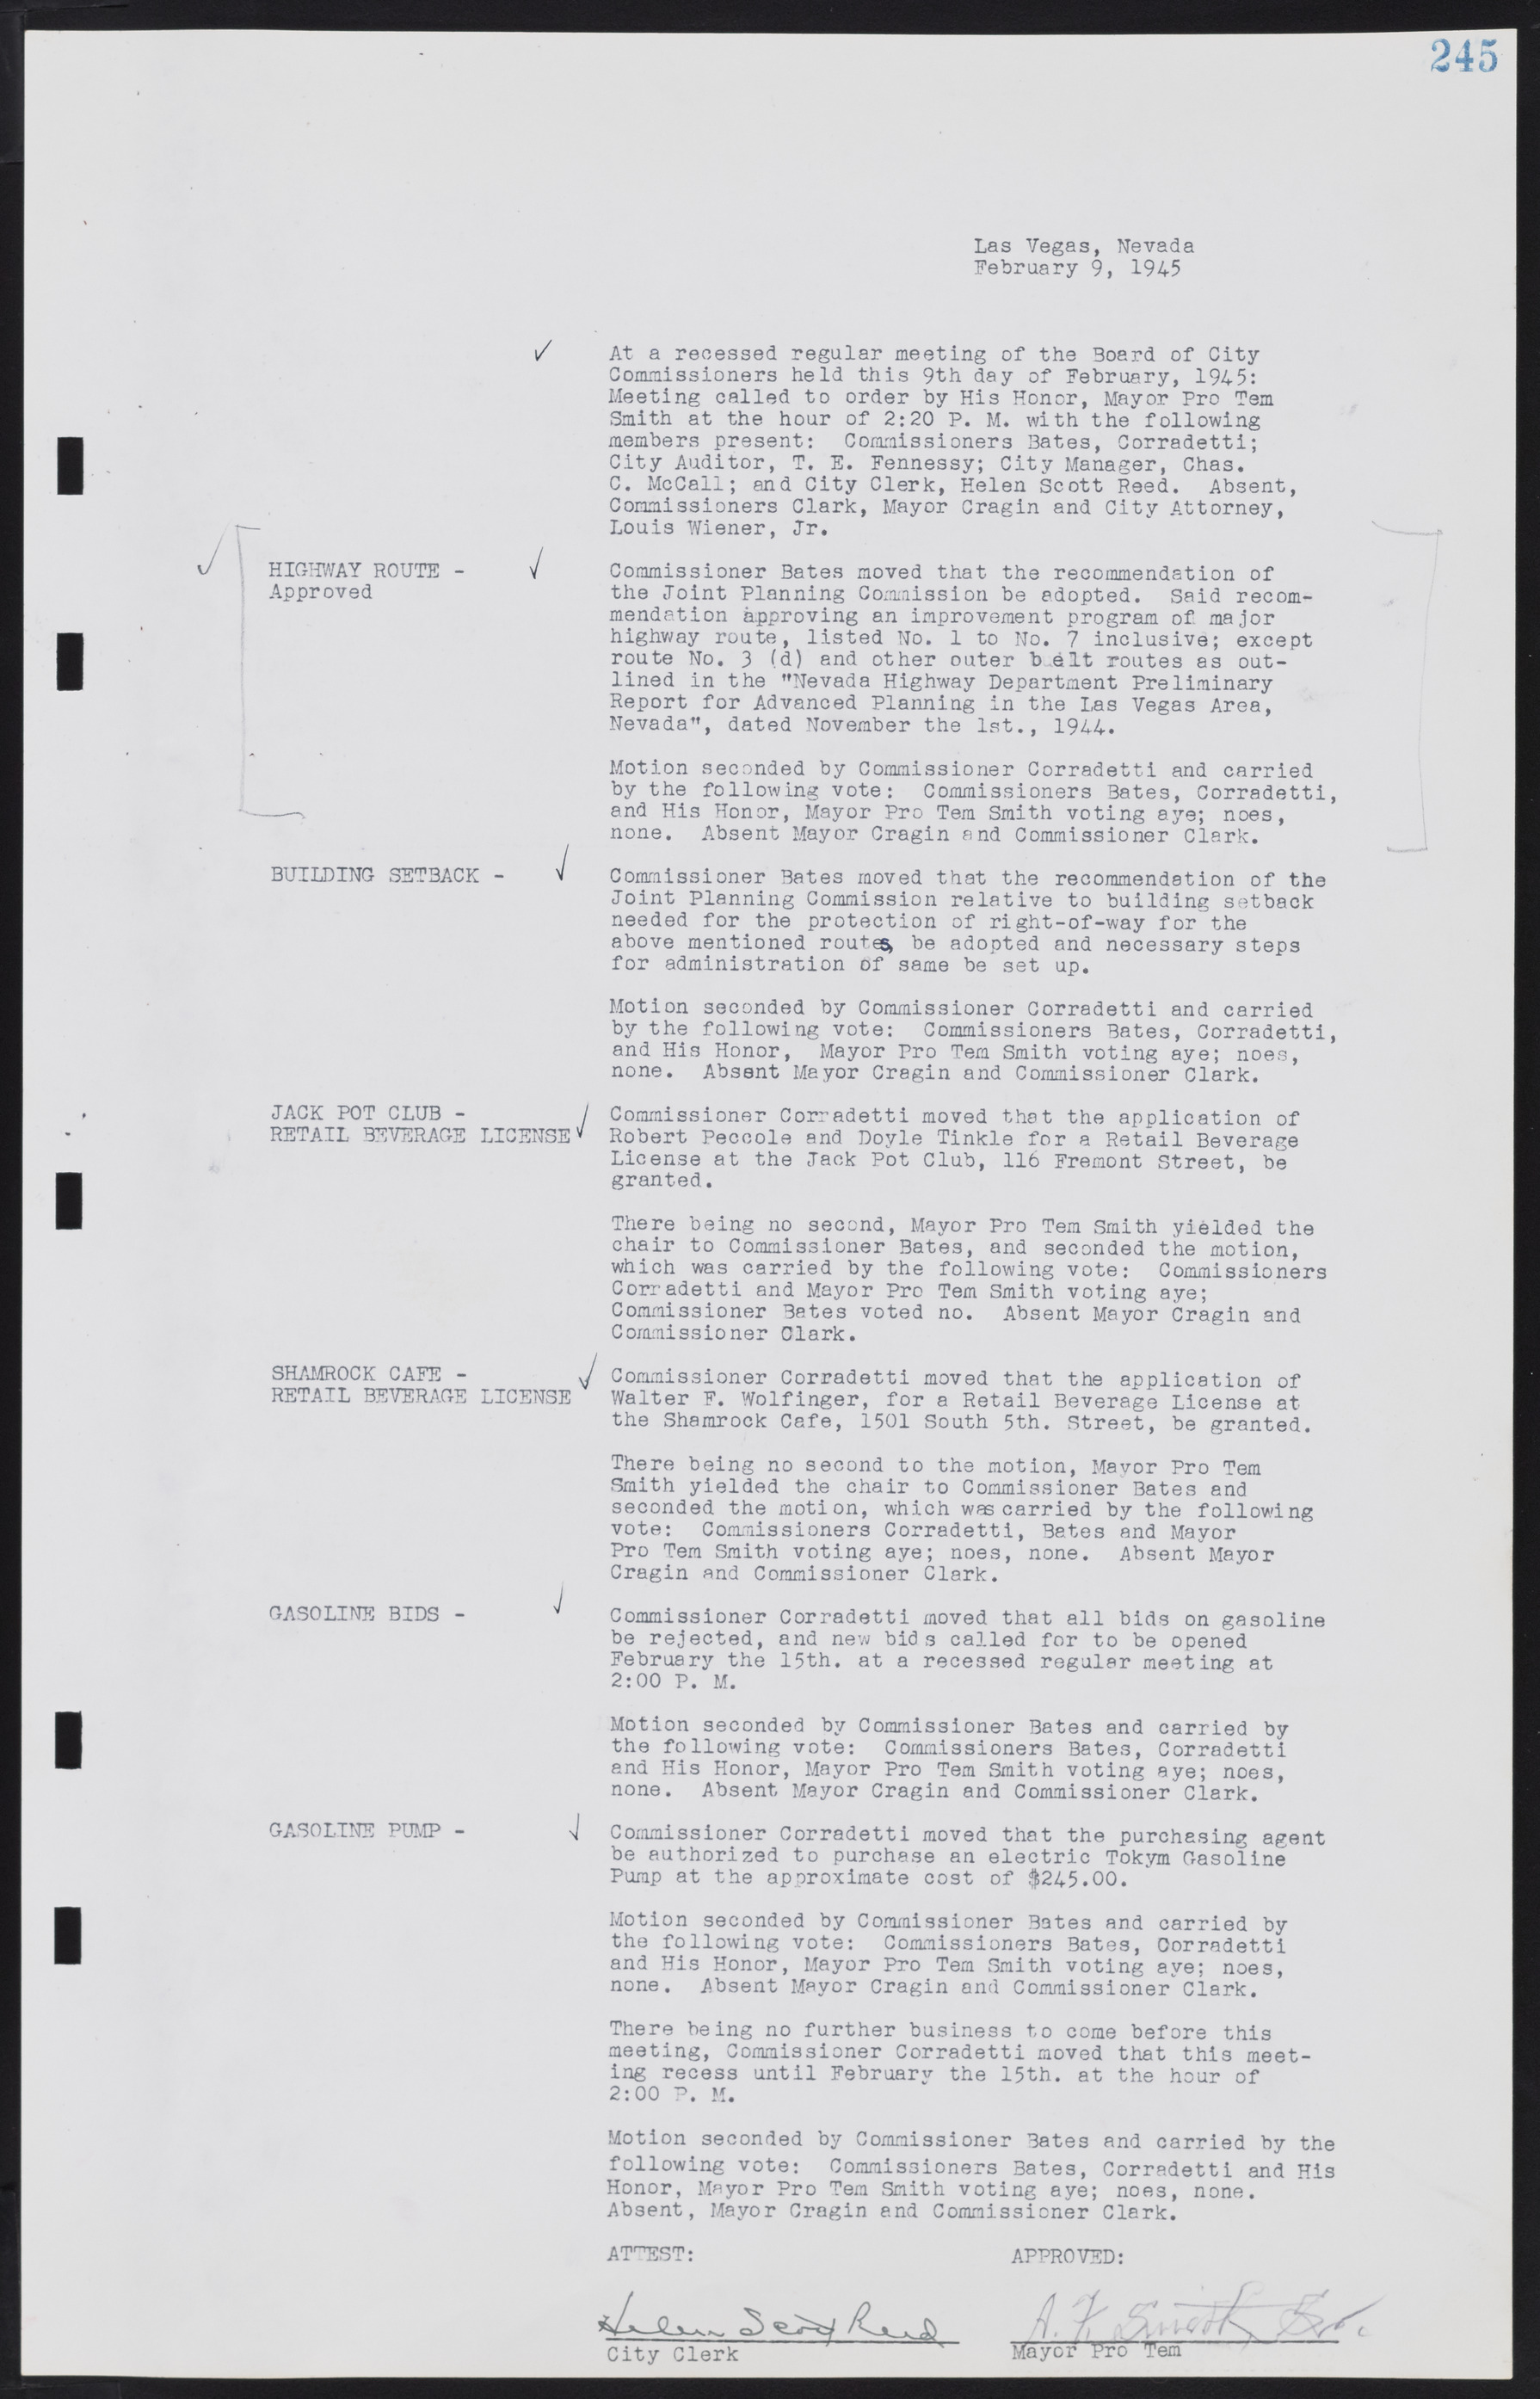 Las Vegas City Commission Minutes, August 11, 1942 to December 30, 1946, lvc000005-267